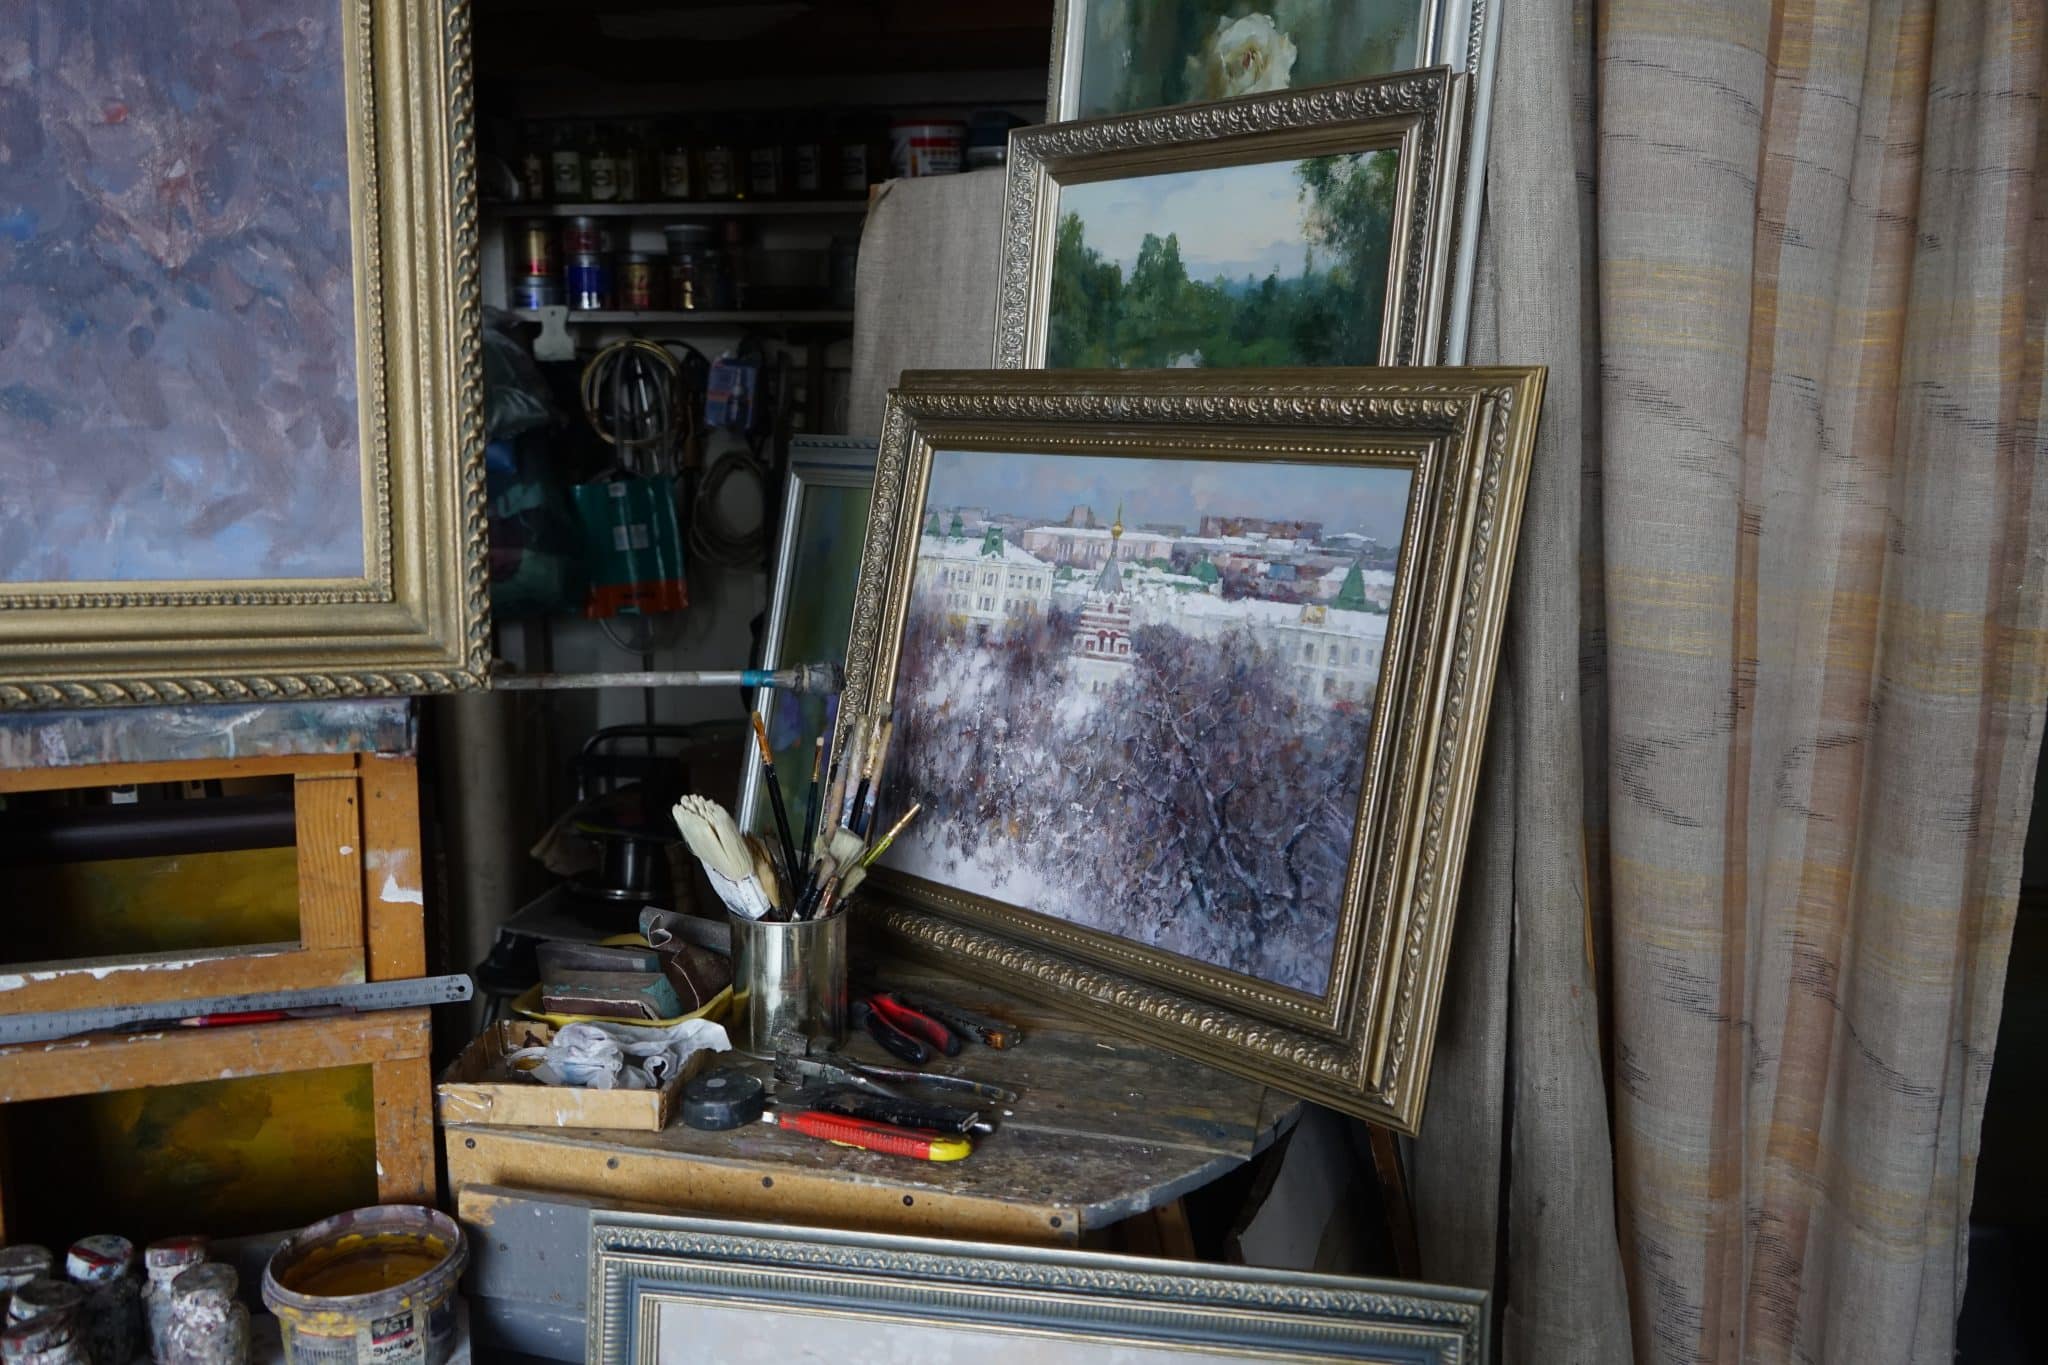 "Пасмурная погода - подарок для живописца" - история художника который рисует омских губернаторов